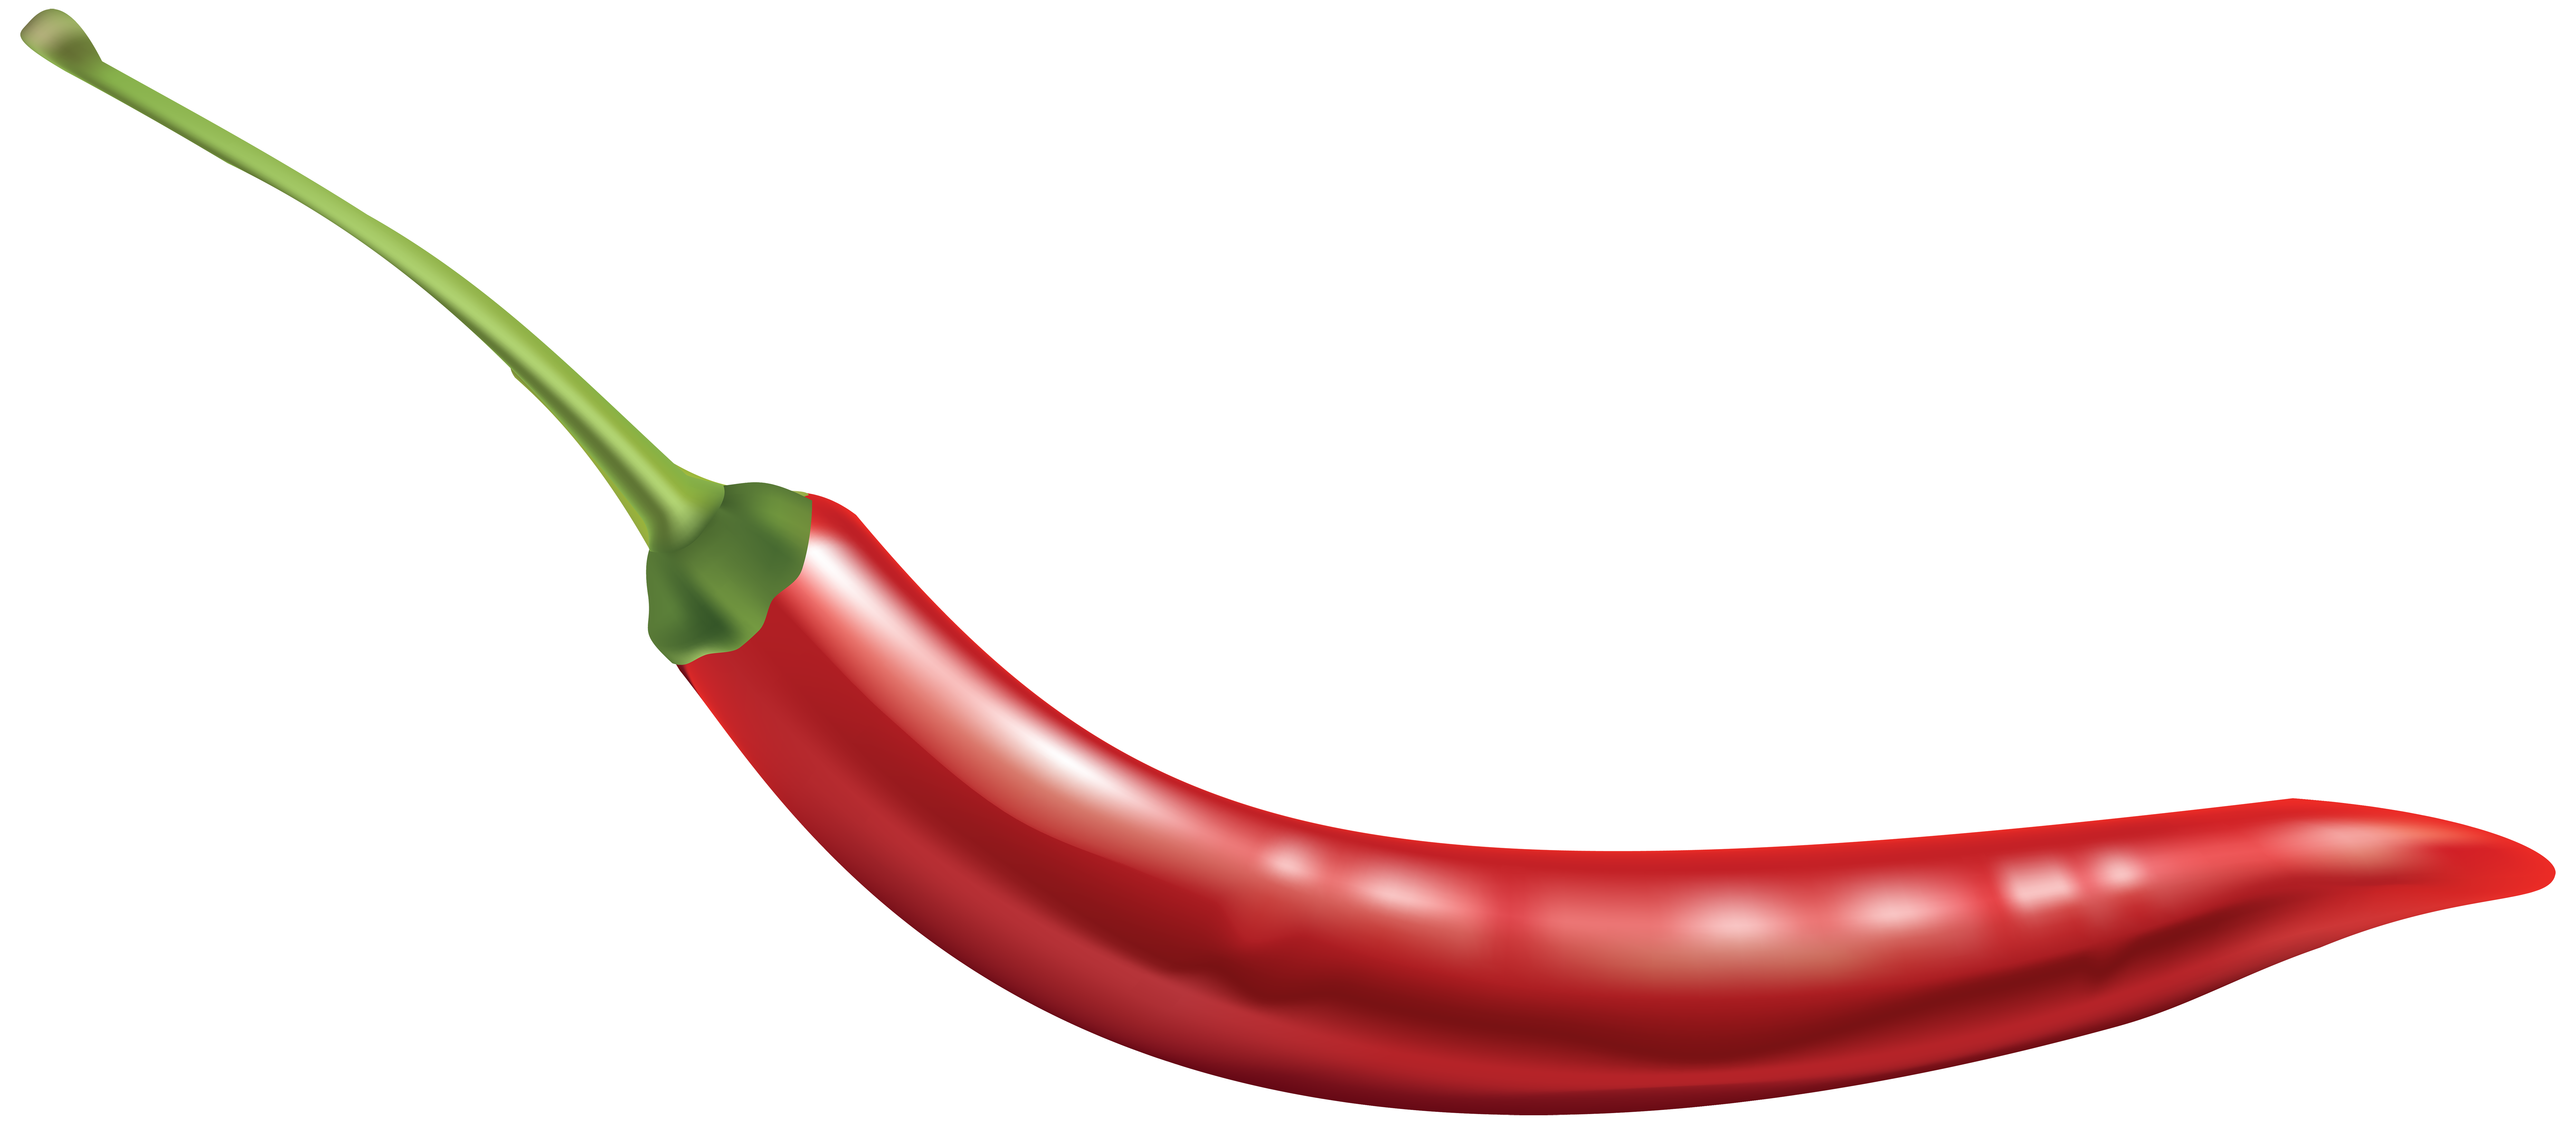 Jalapeno clipart serrano pepper.  collection of chili